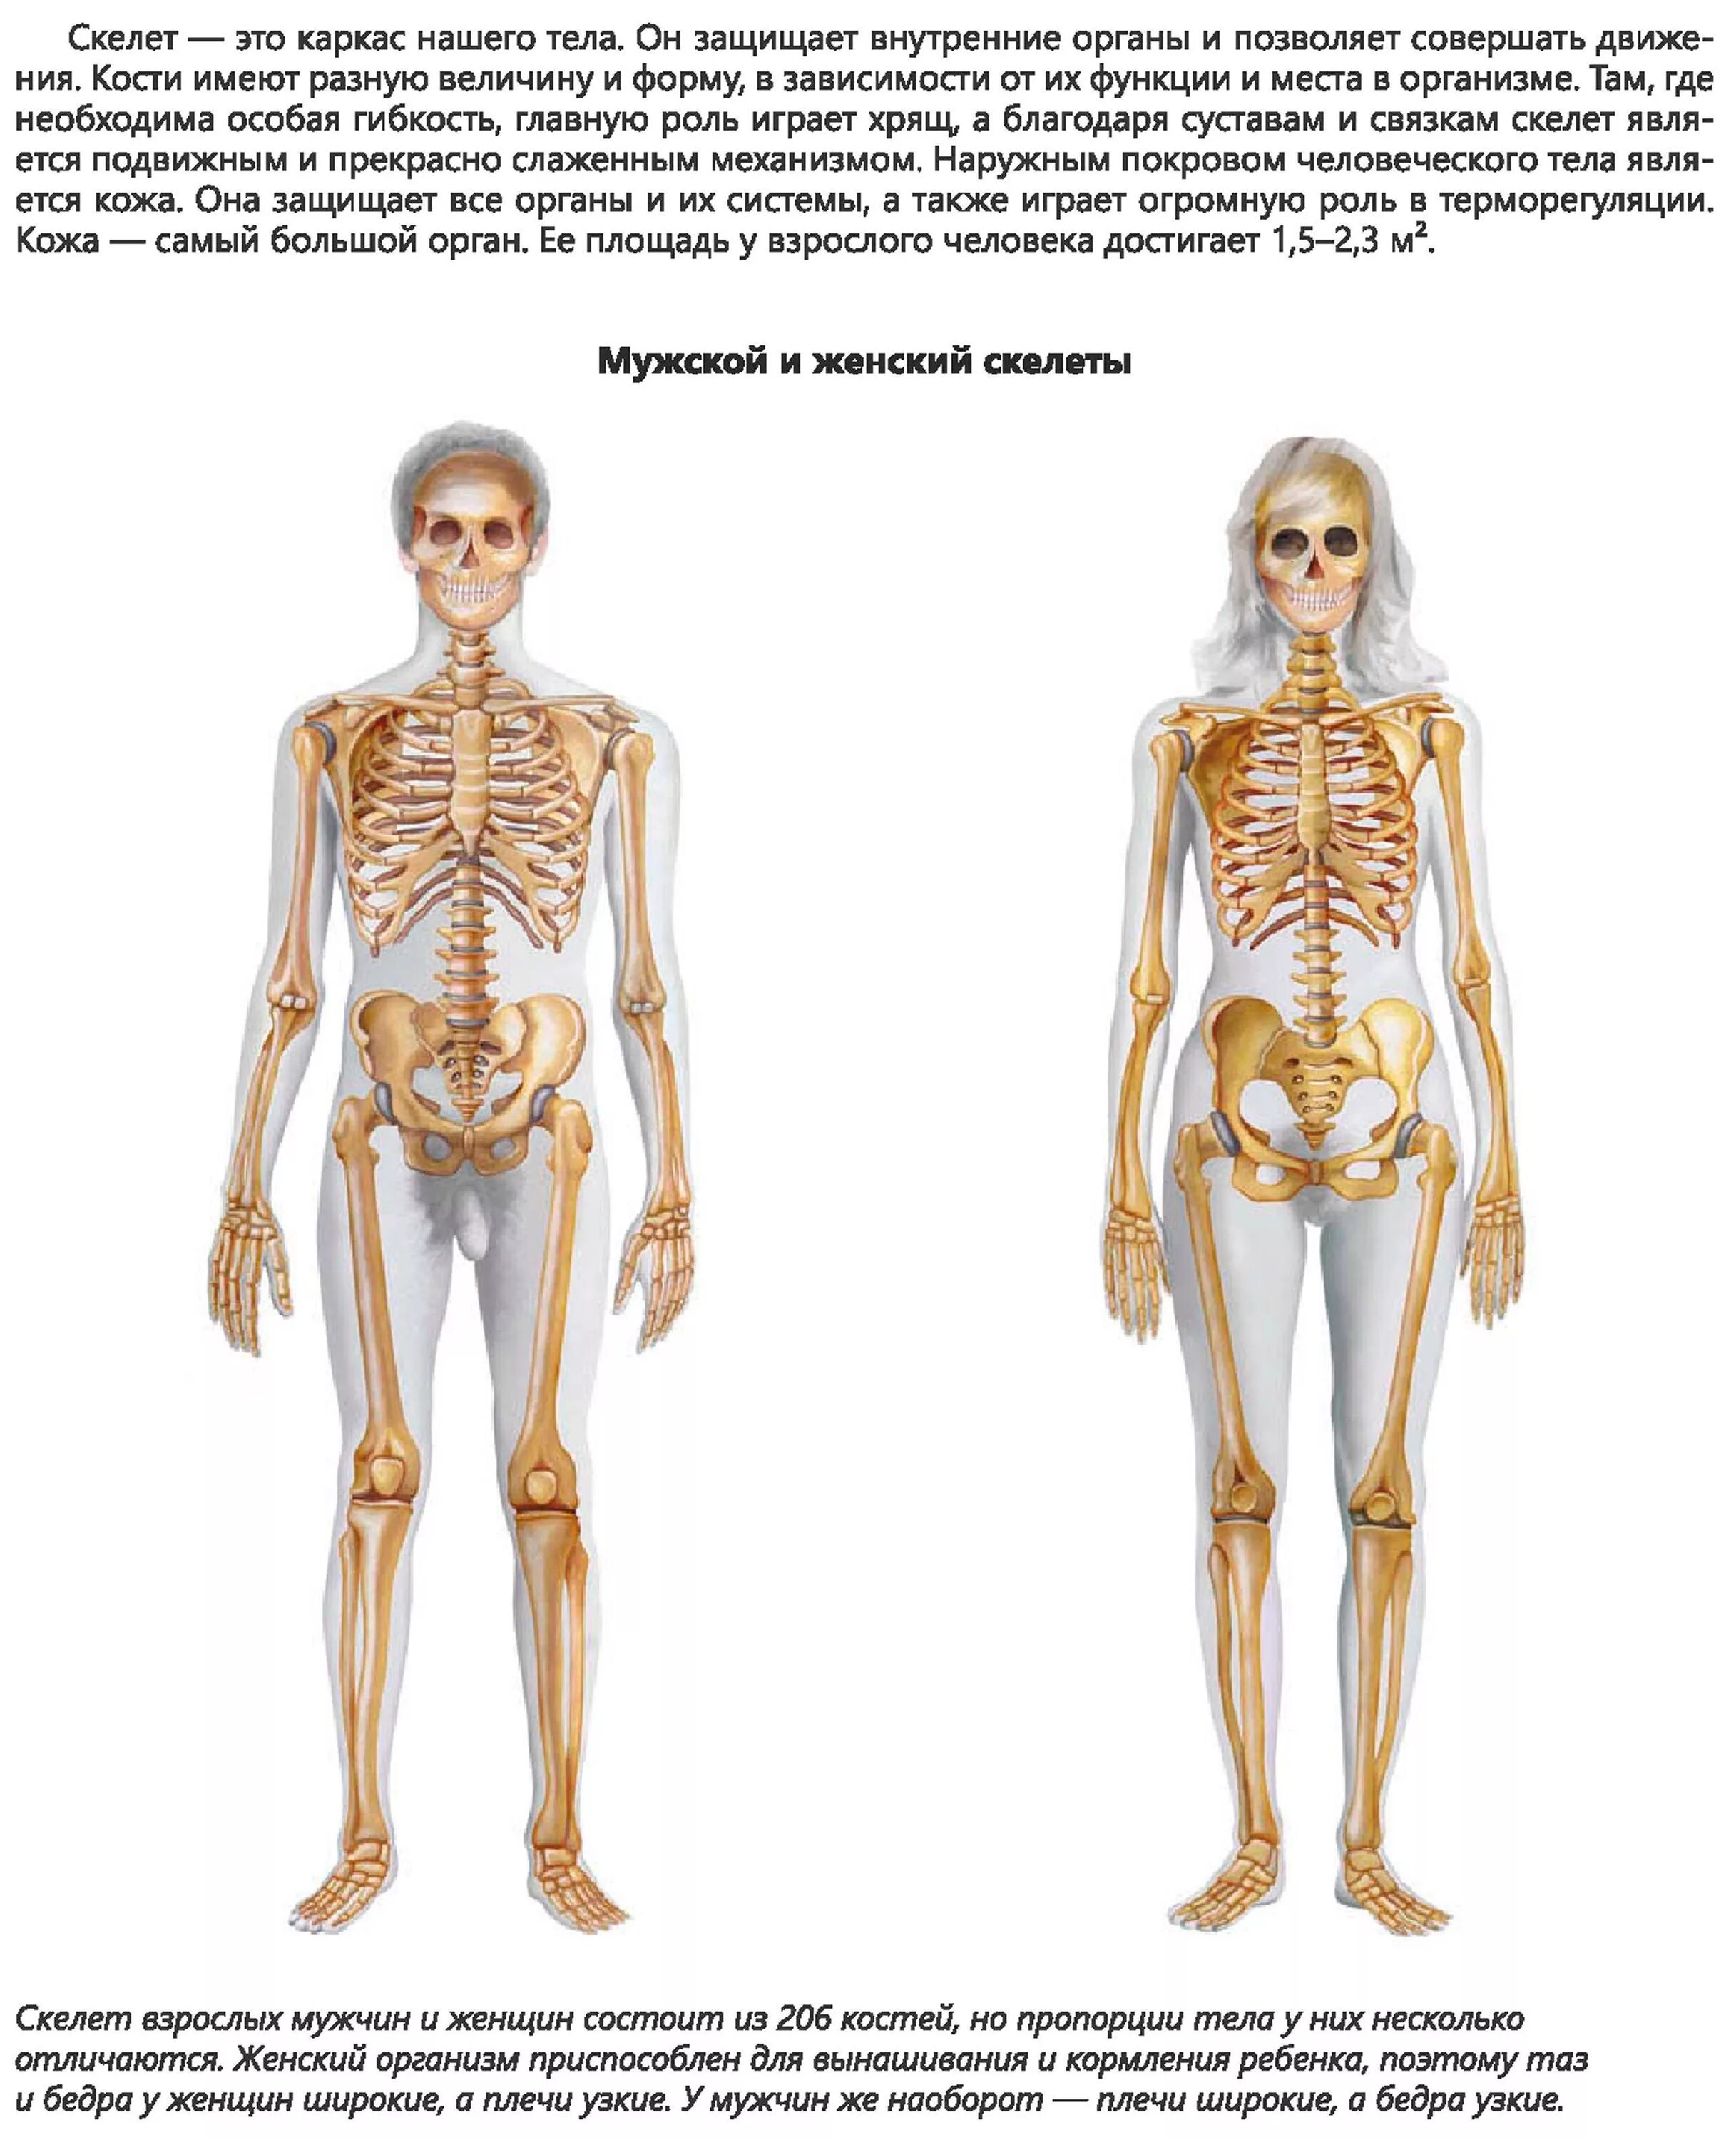 И молодые люди кости человека. Костная система человека скелет. Анатомия человека скелет различия мужчин и женщин. Скелет мужчины и женщины. Скелет мужчины.